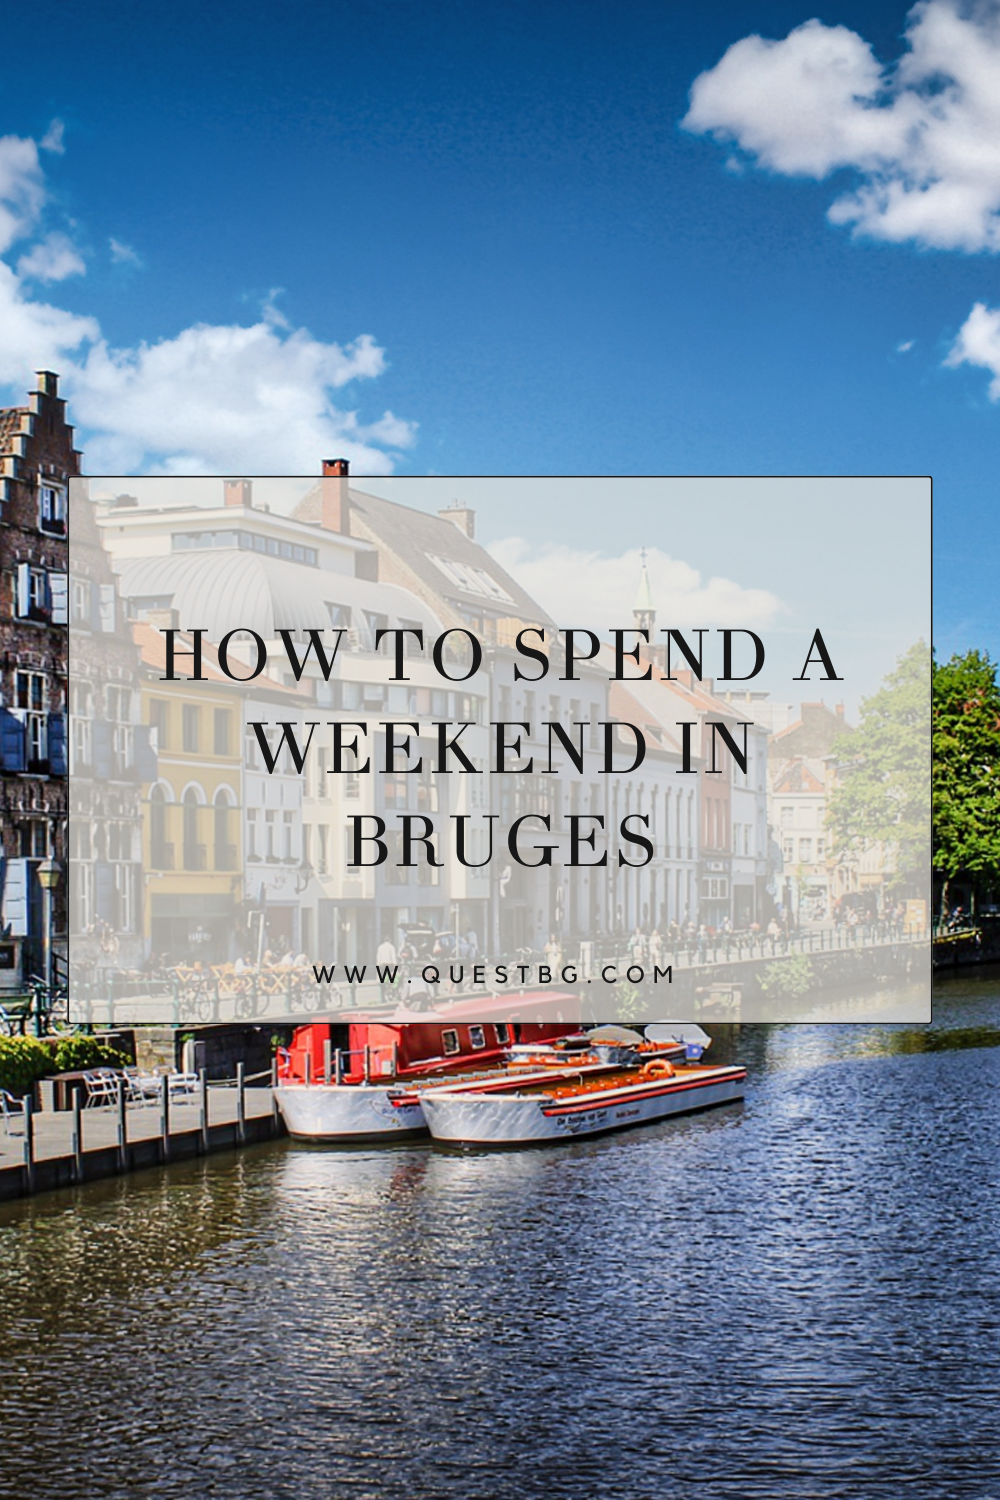 A Visit to Bruges